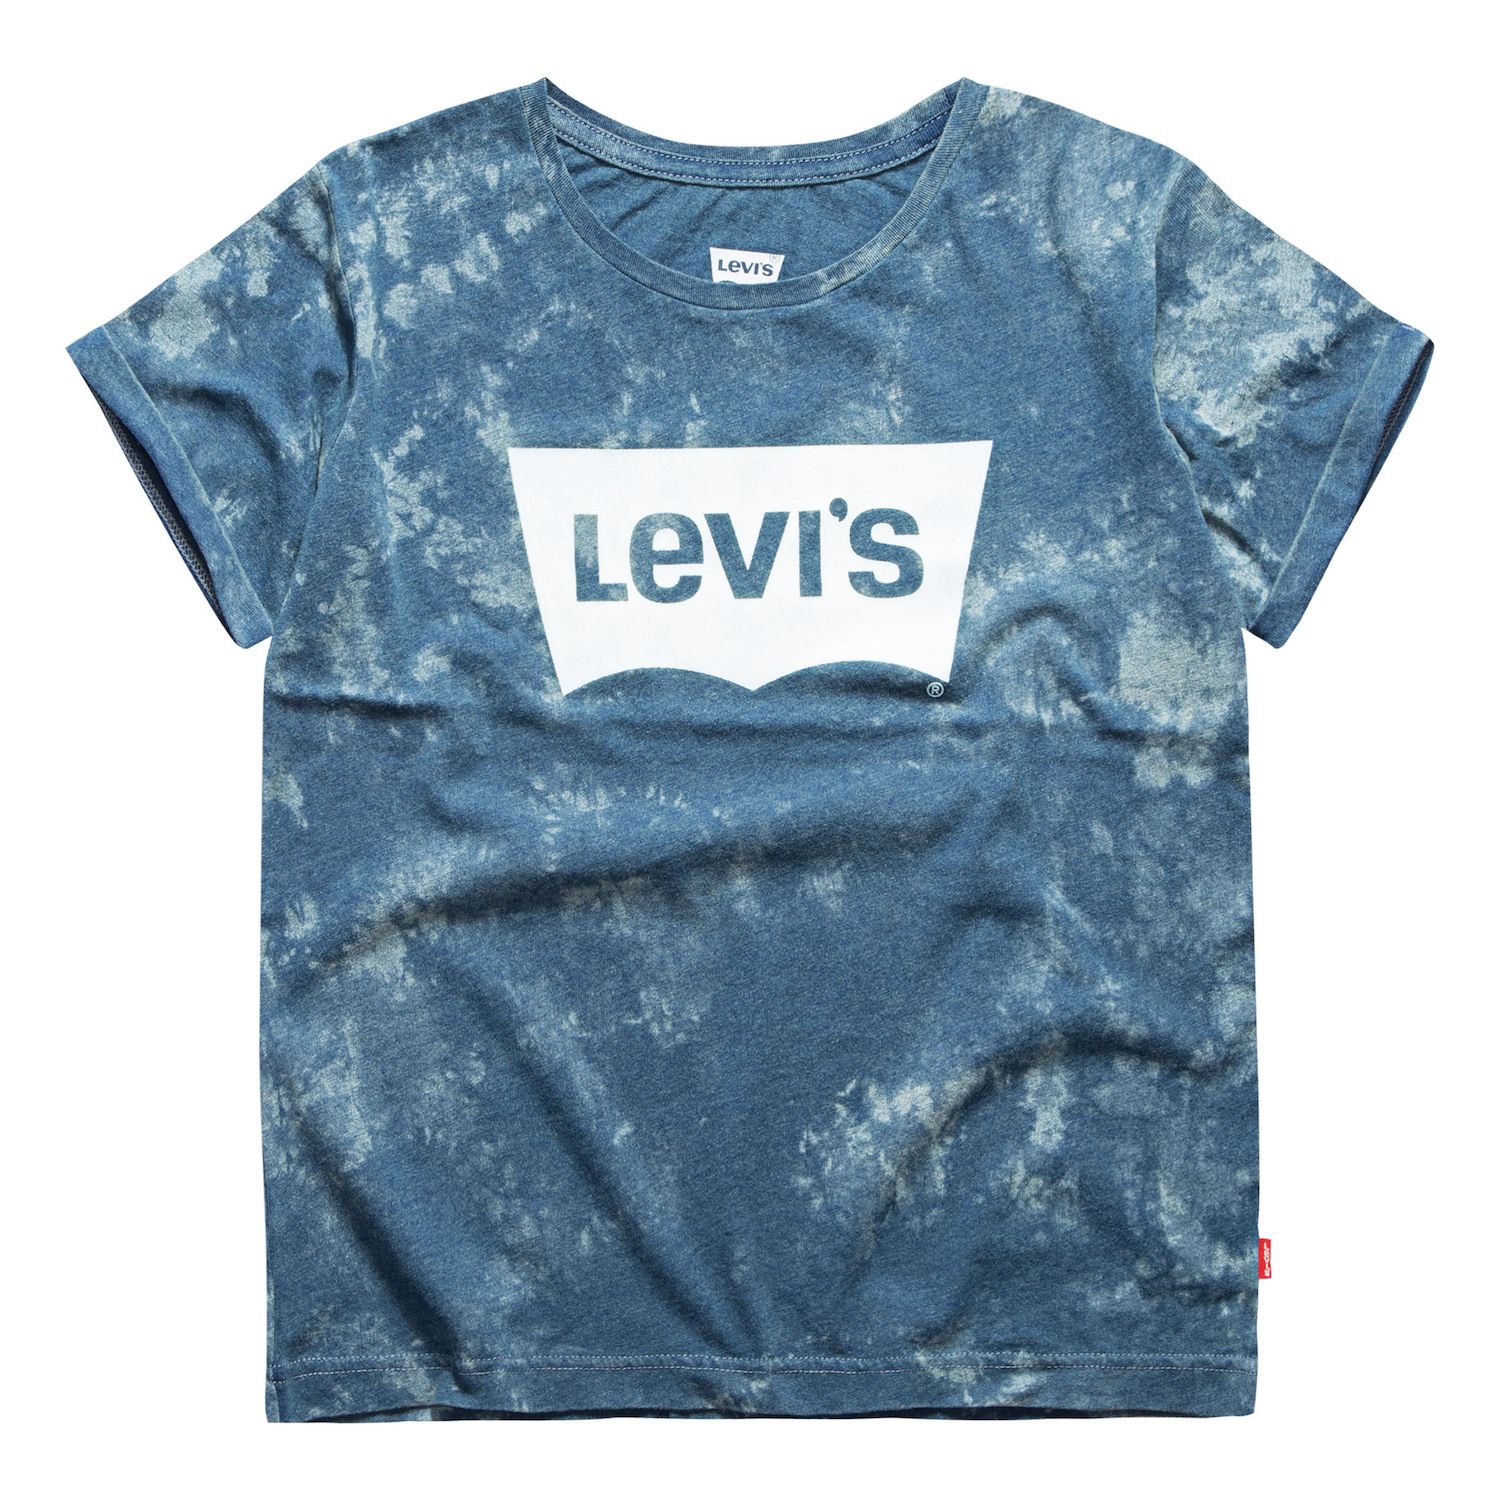 levi's tie dye shirt